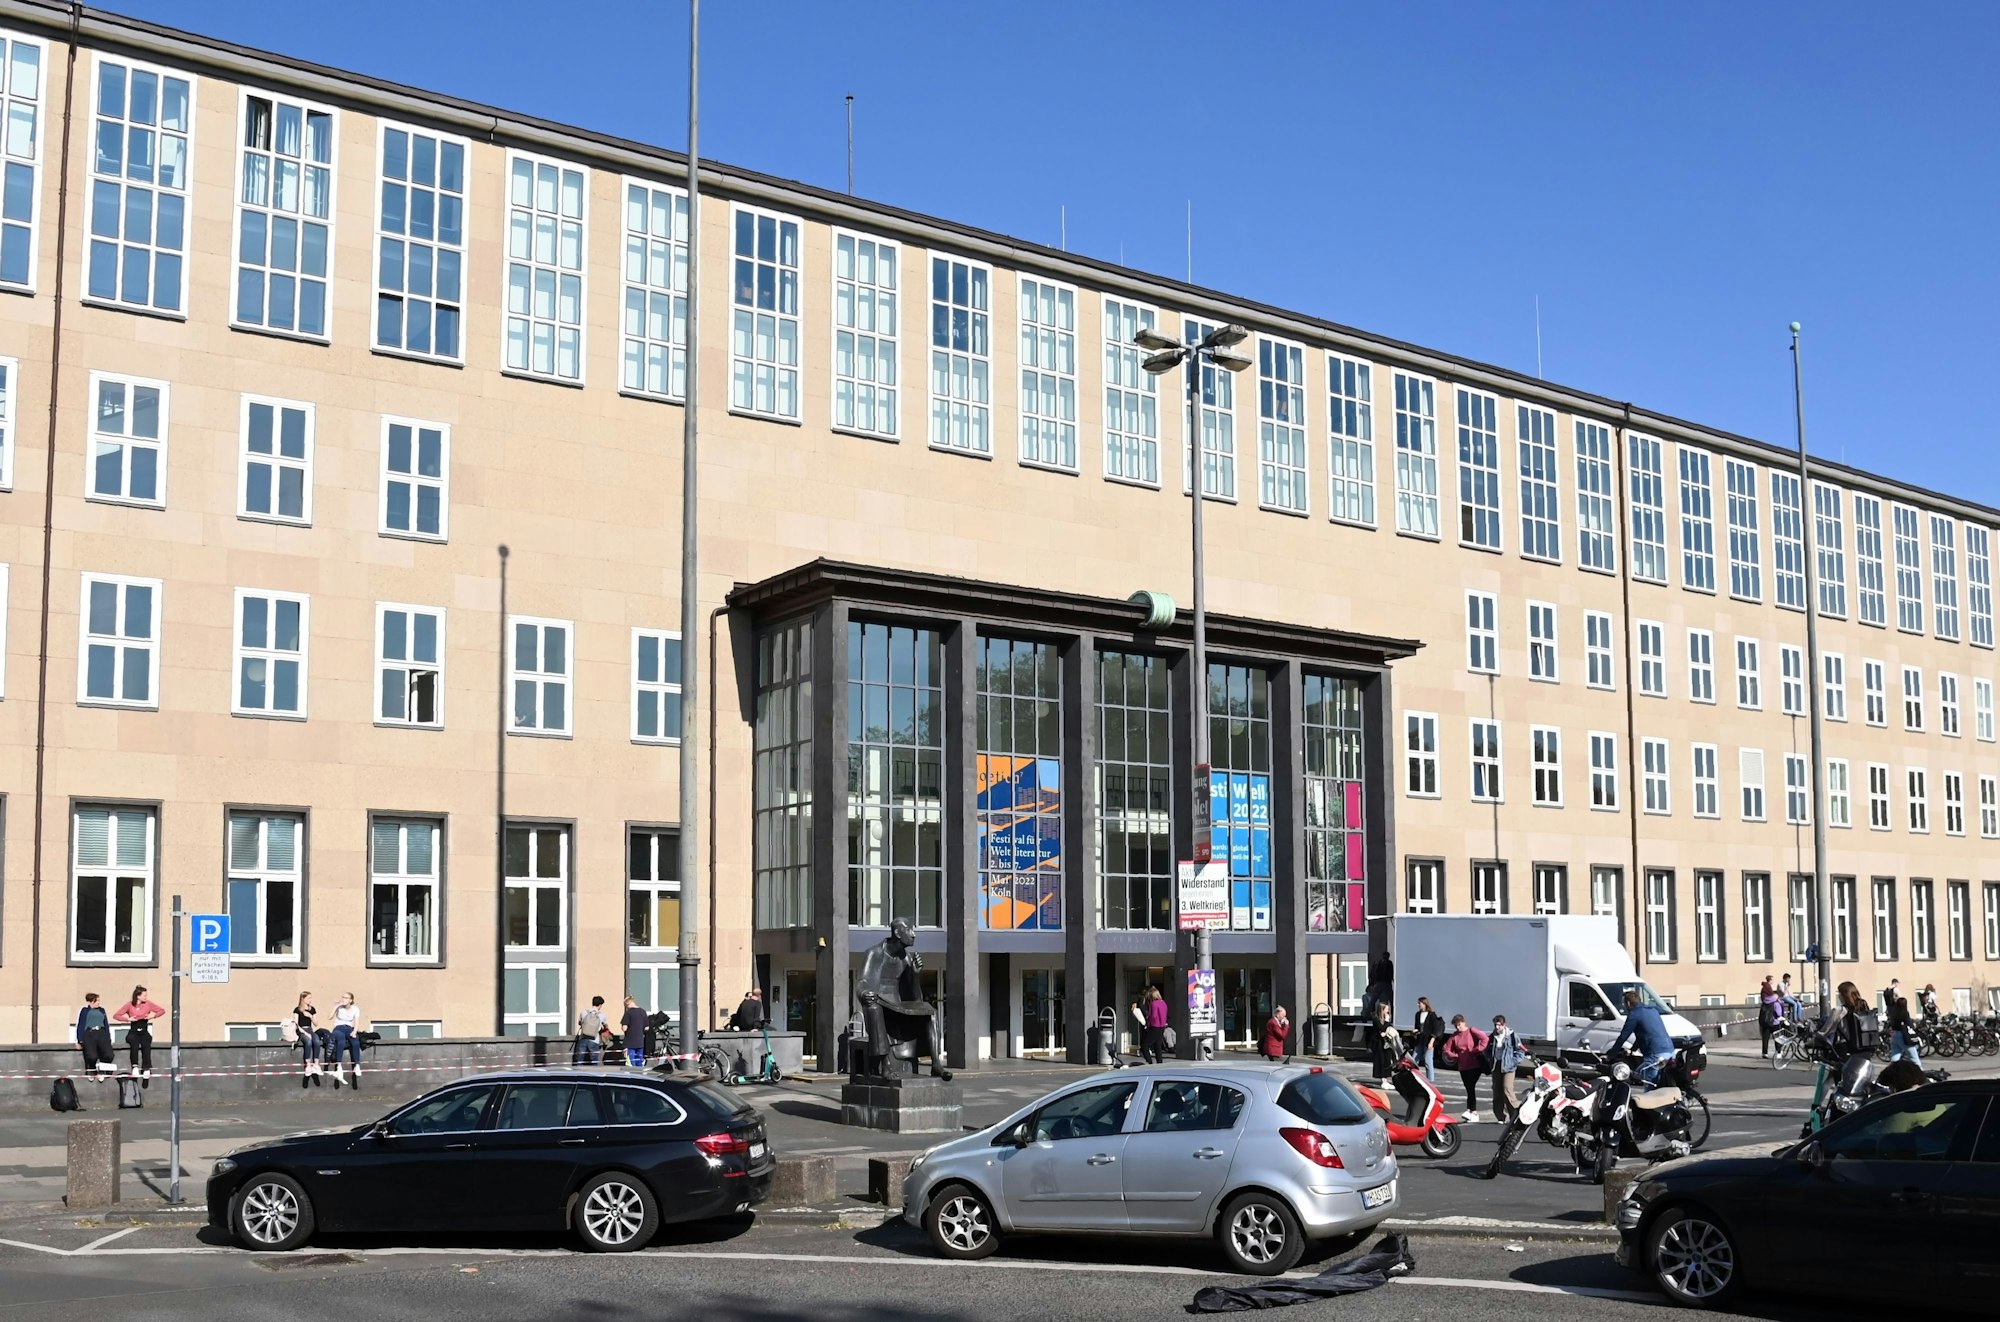 Das Hauptgebäude der Universität Köln am Albertus-Magnus-Platz vor einem blauen Himmel.